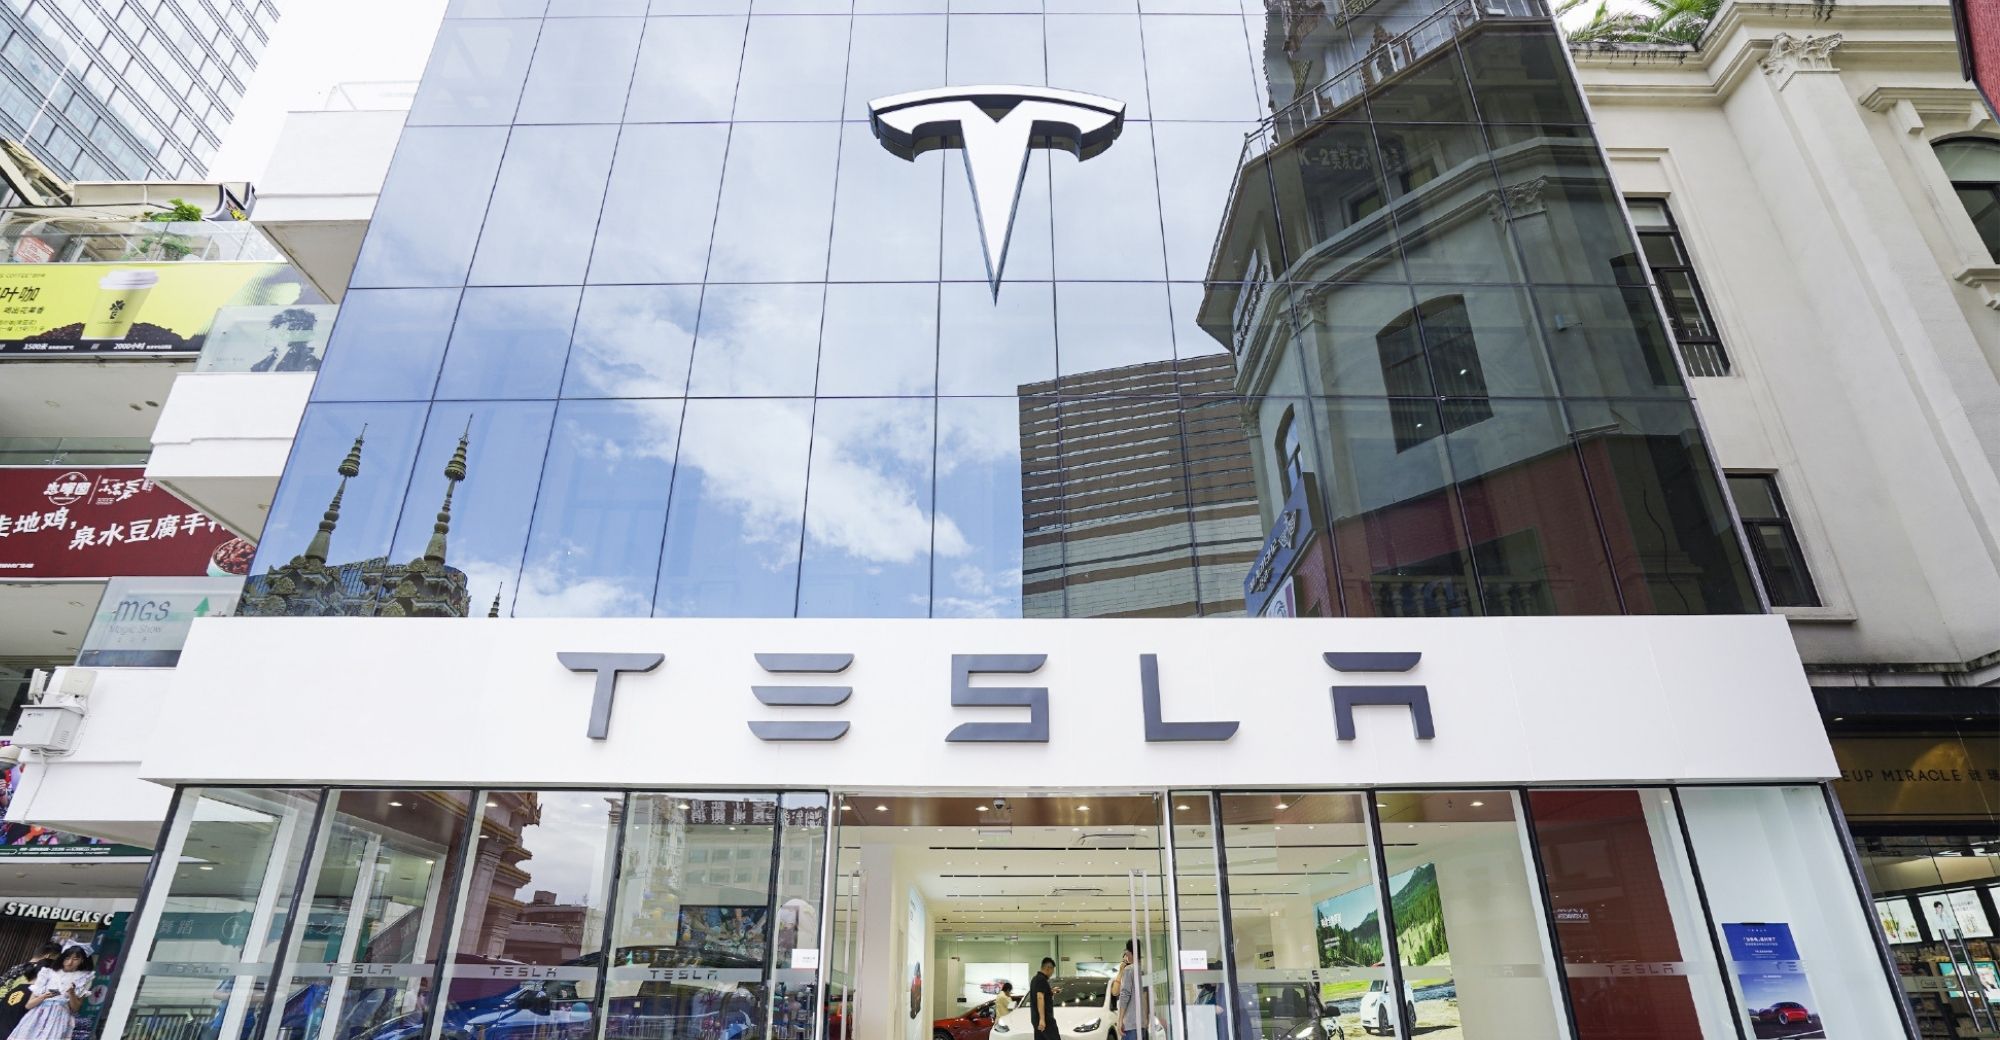 Tesla mempersingkat waktu pengiriman mobil tipe Y penggerak roda belakang di Cina menjadi 1-4 minggu